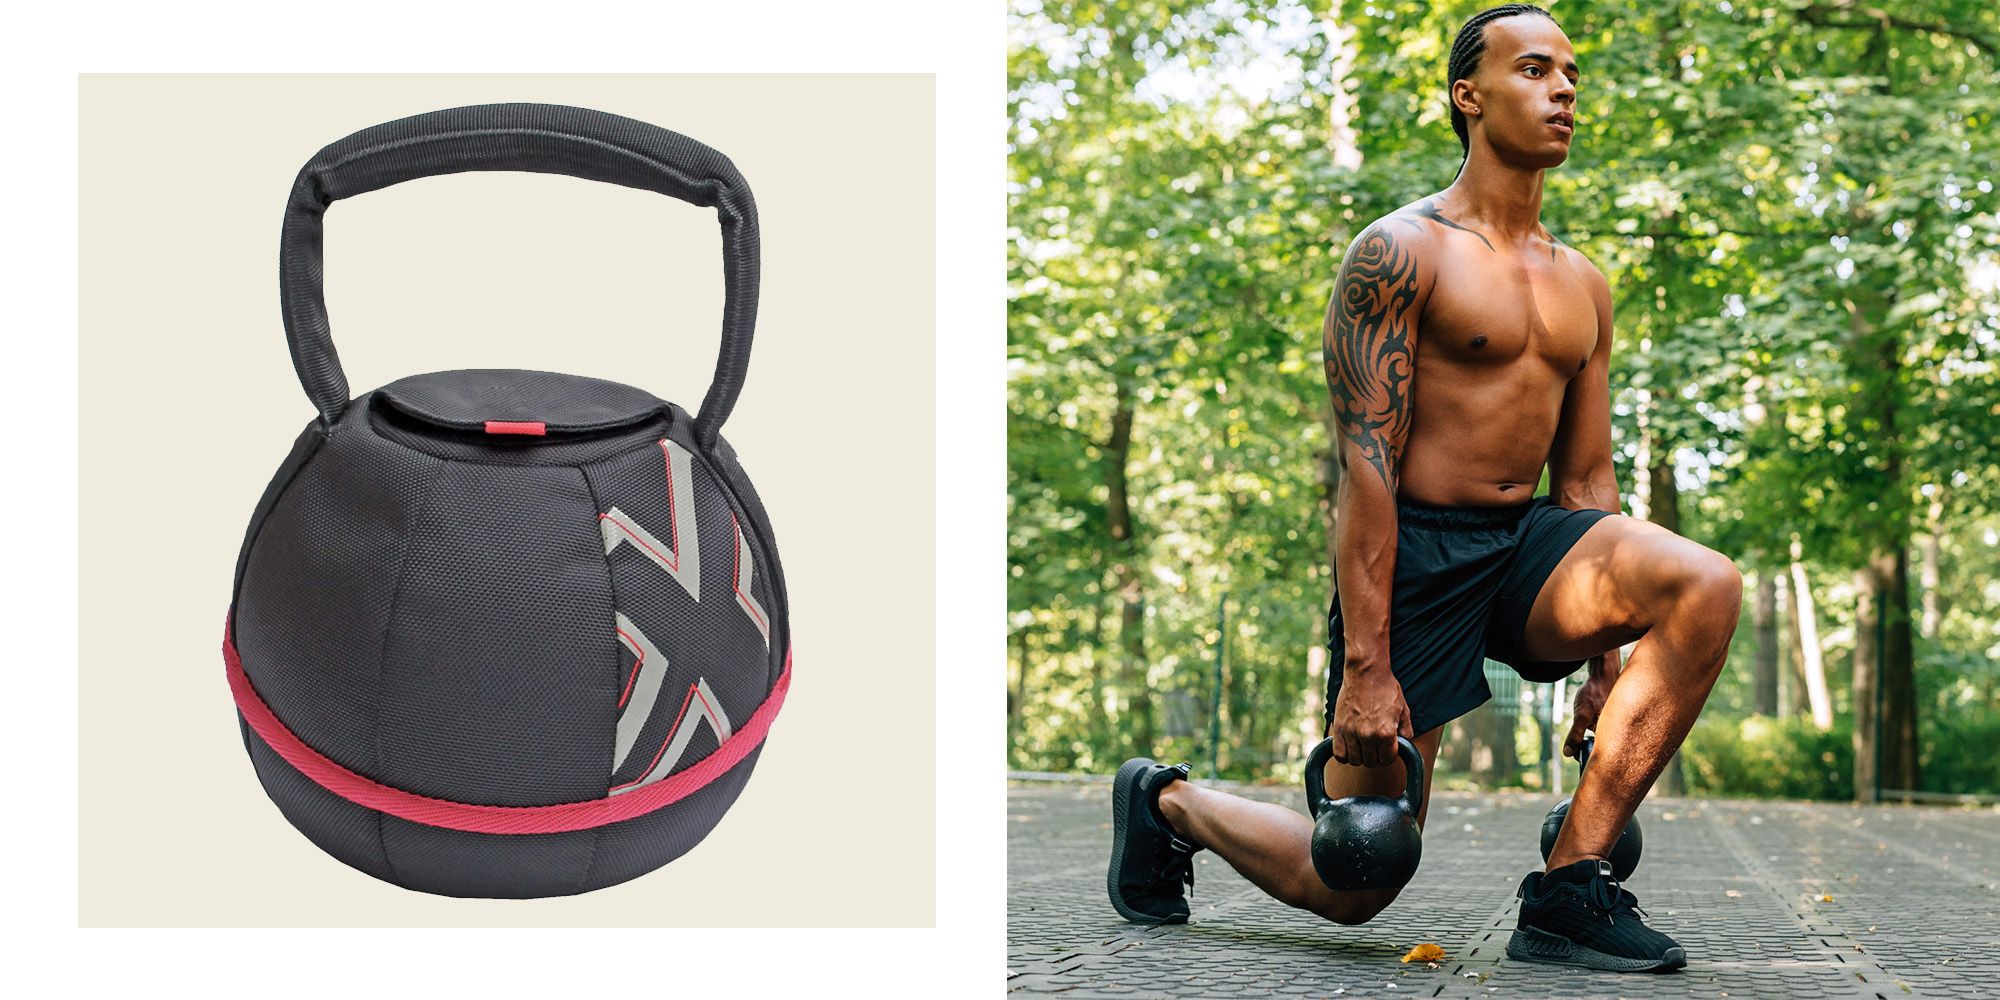 Adjustable Sandbag Elikliv Portable Kettlebell Kettle Bell Sand Bag Gym Weight Workout Home 